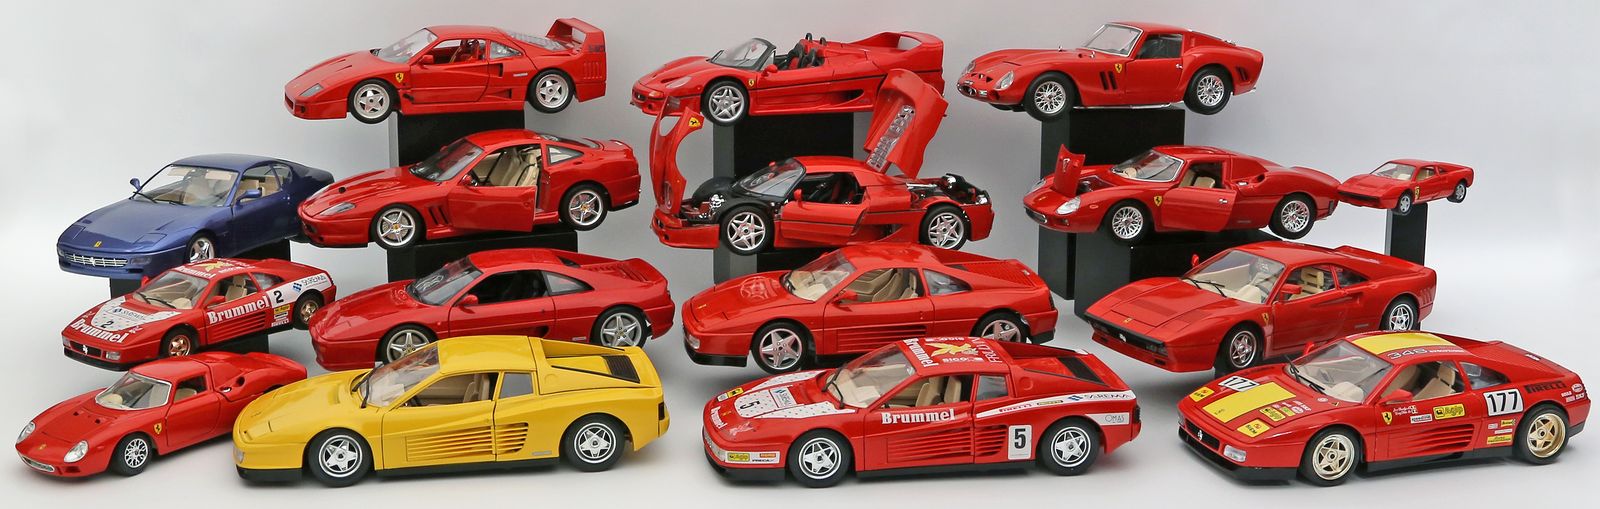 16 Ferrari-Modellautos.